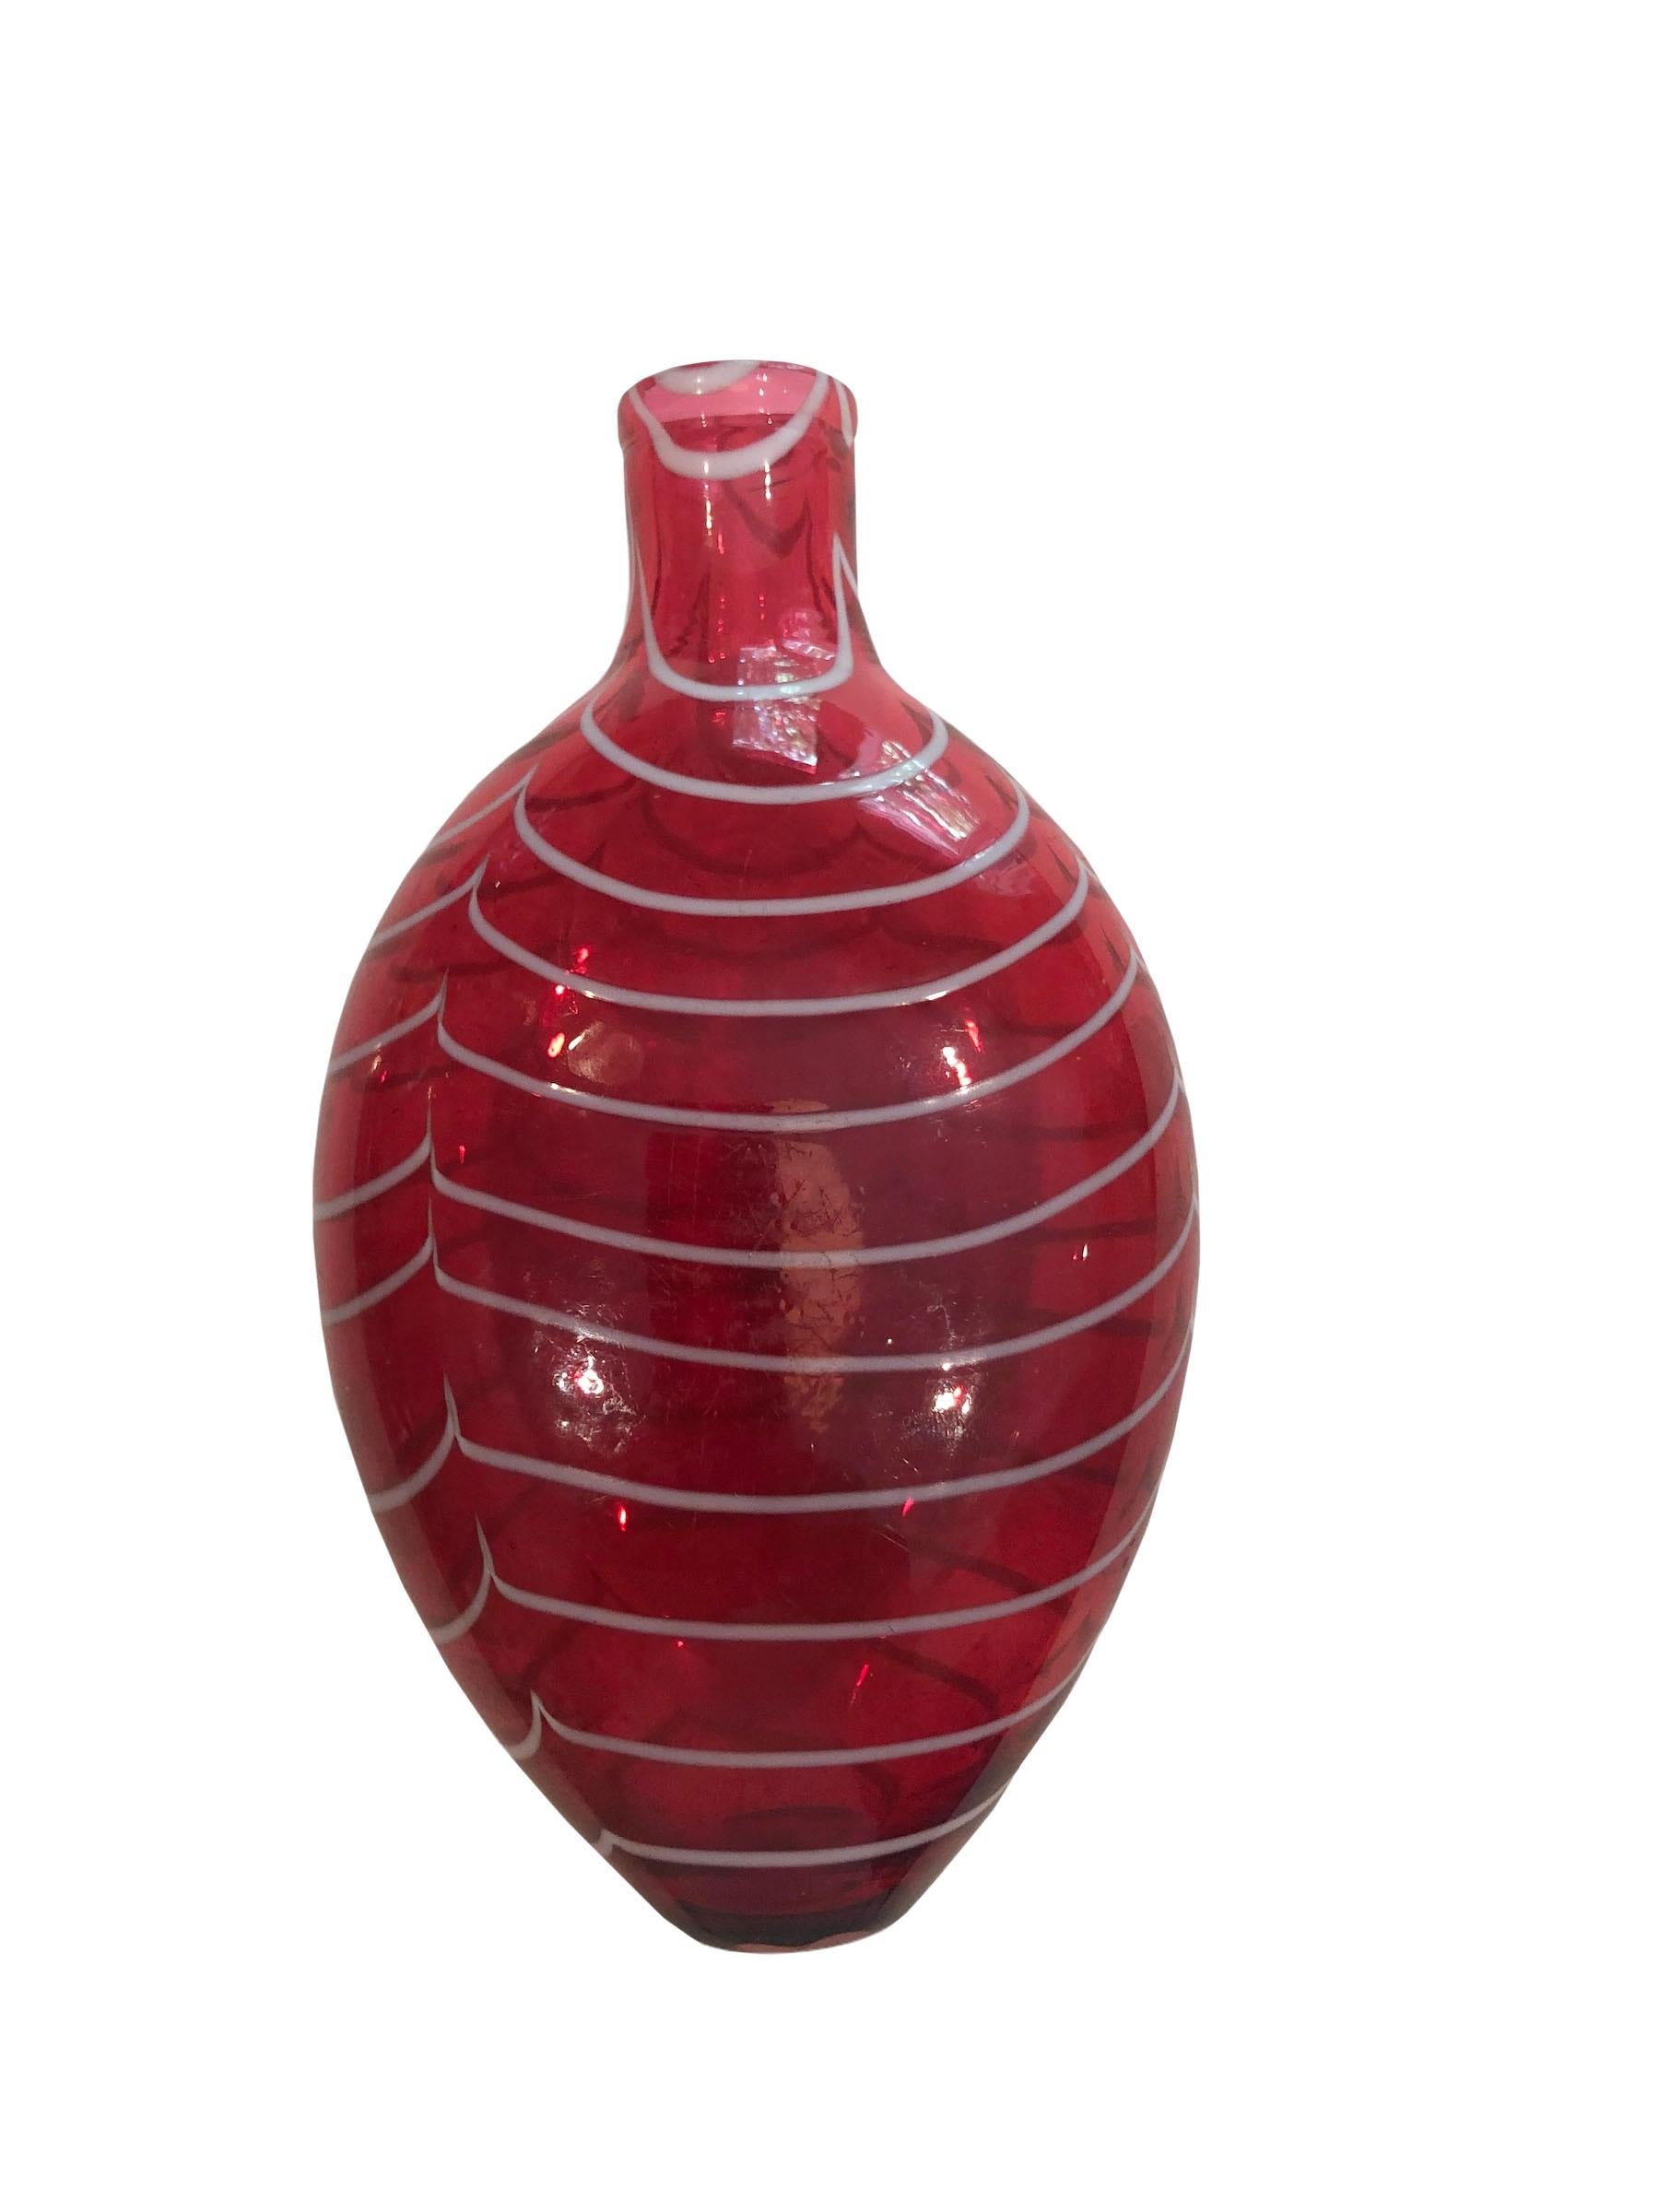 Une flasque de poche anglaise en verre Nailsea rouge et blanc. Verre soufflé Nailsea très fin début du 19ème siècle années 1830.